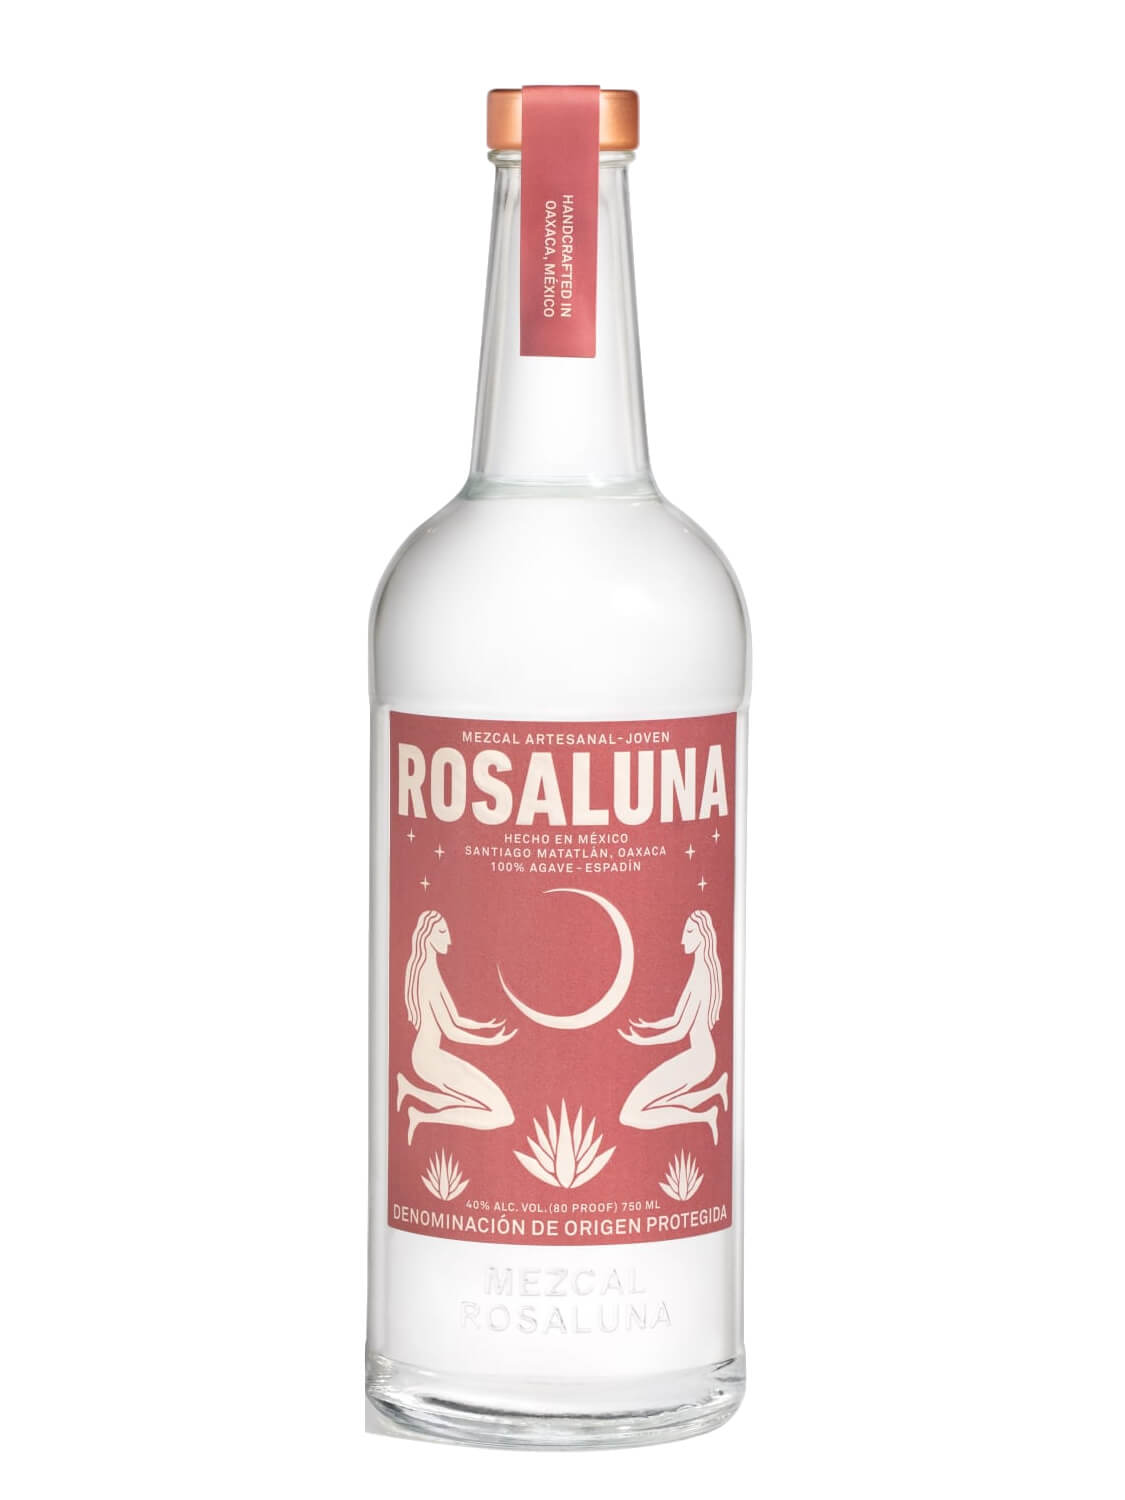 Rosaluna Mezcal Joven bottle